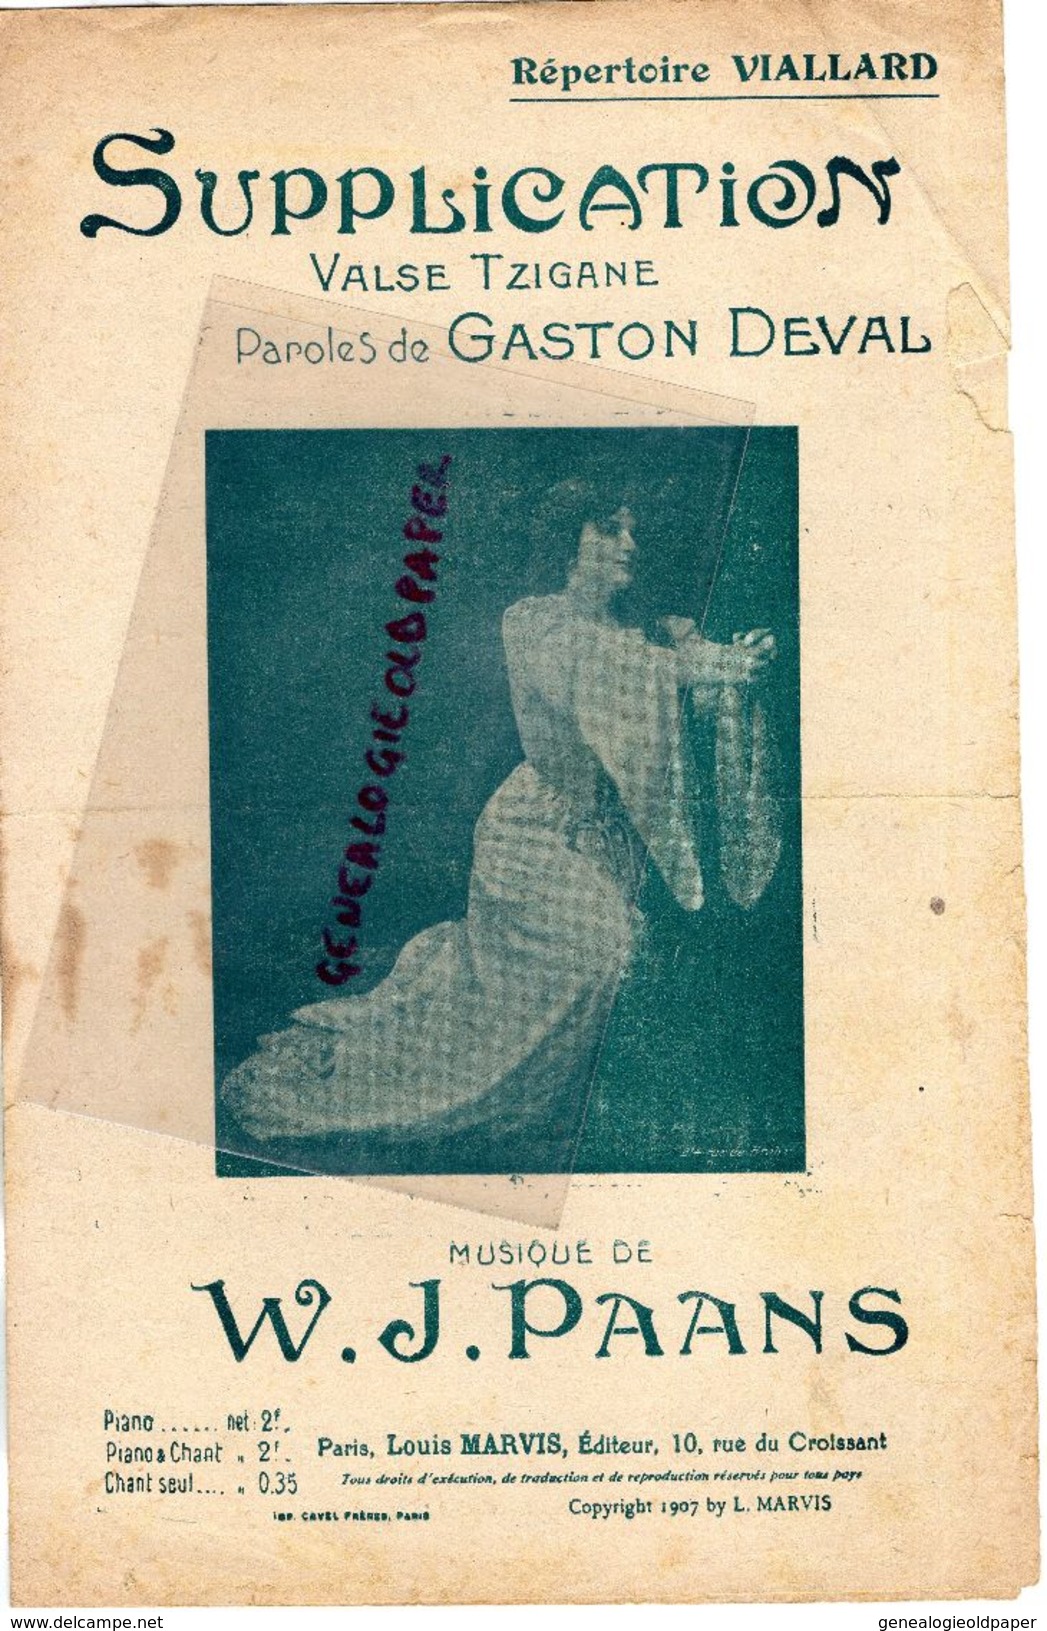 PARTITION MUSIQUE- SUPPLICATION-VALSE TZIGANE-GASTON DEVAL*VIALLARD- W.J. PAANS-EDITEUR LOUIS MARVIS PARIS-1907 - Noten & Partituren